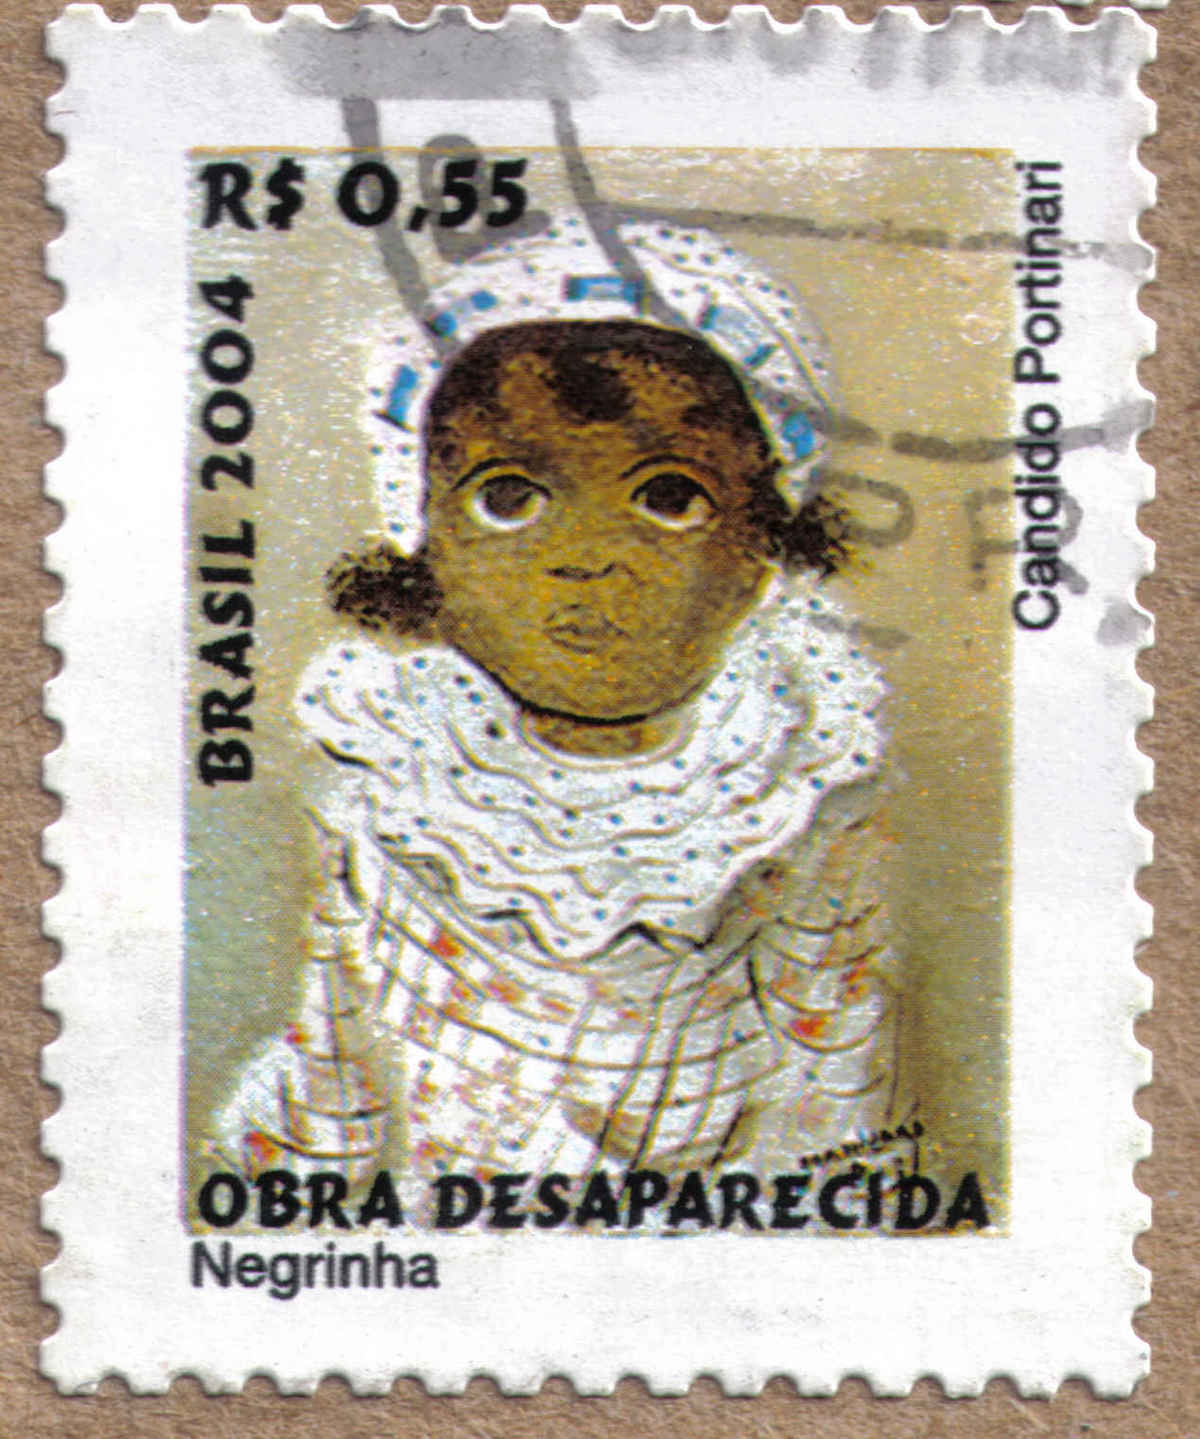 Negrinha_OBRA DESAPARECIDA_Cndido Portinari_R$ 0,55_ Brasil 2004.jpg